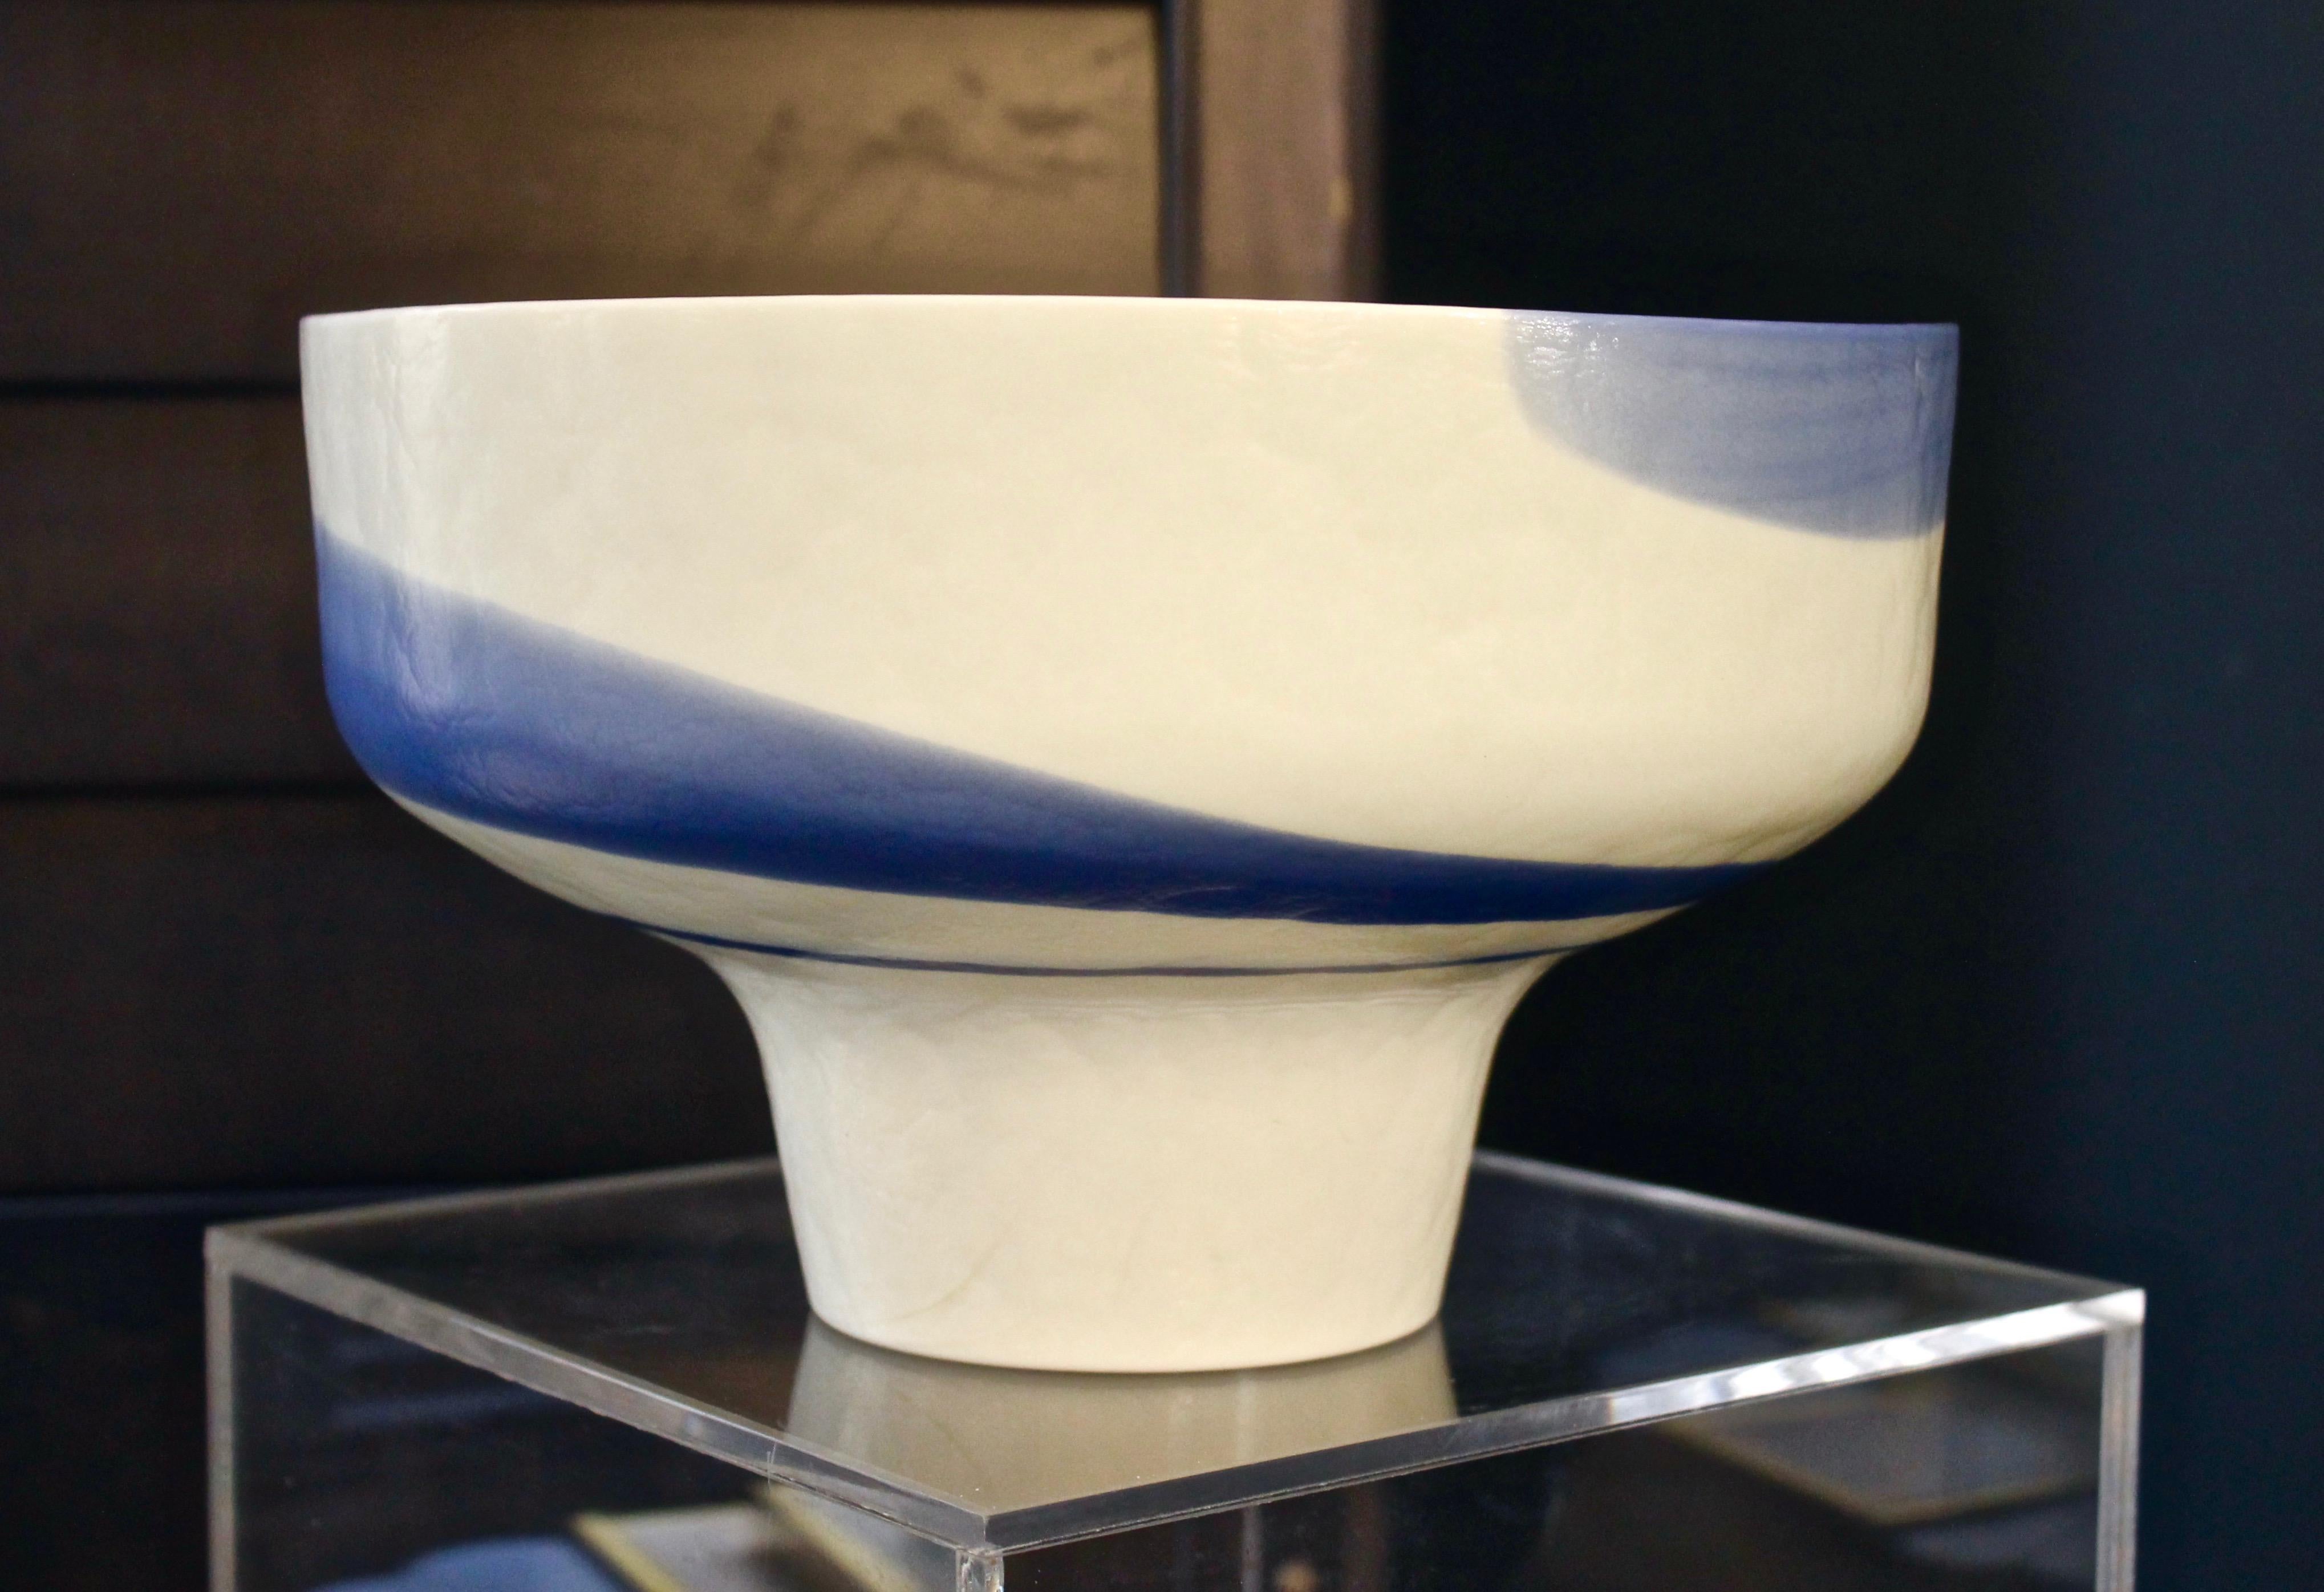 Coupe ronde moderne organique du milieu du siècle en verre épais de Murano, réalisée sur mesure pour l'Hôtel des Bains de Venise, une paire est disponible, réalisée en pâte de verre blanc crème ivoire, décorée de légers tourbillons bleu aqua,